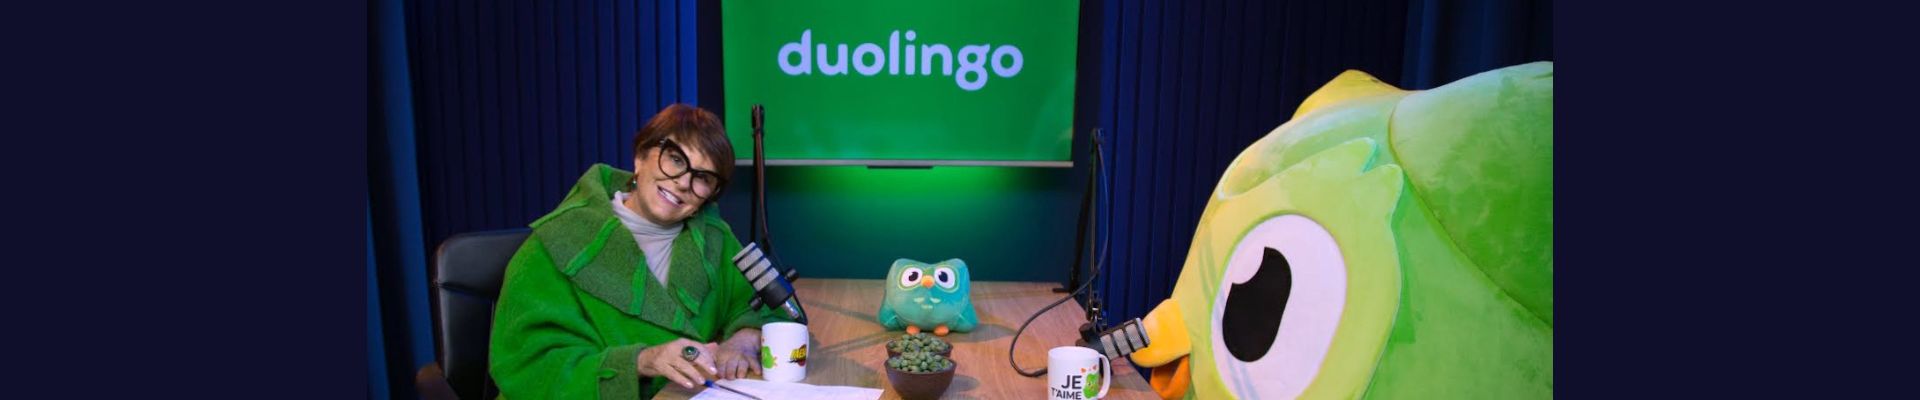 Márcia Sensitiva protagoniza nova campanha de Duolingo